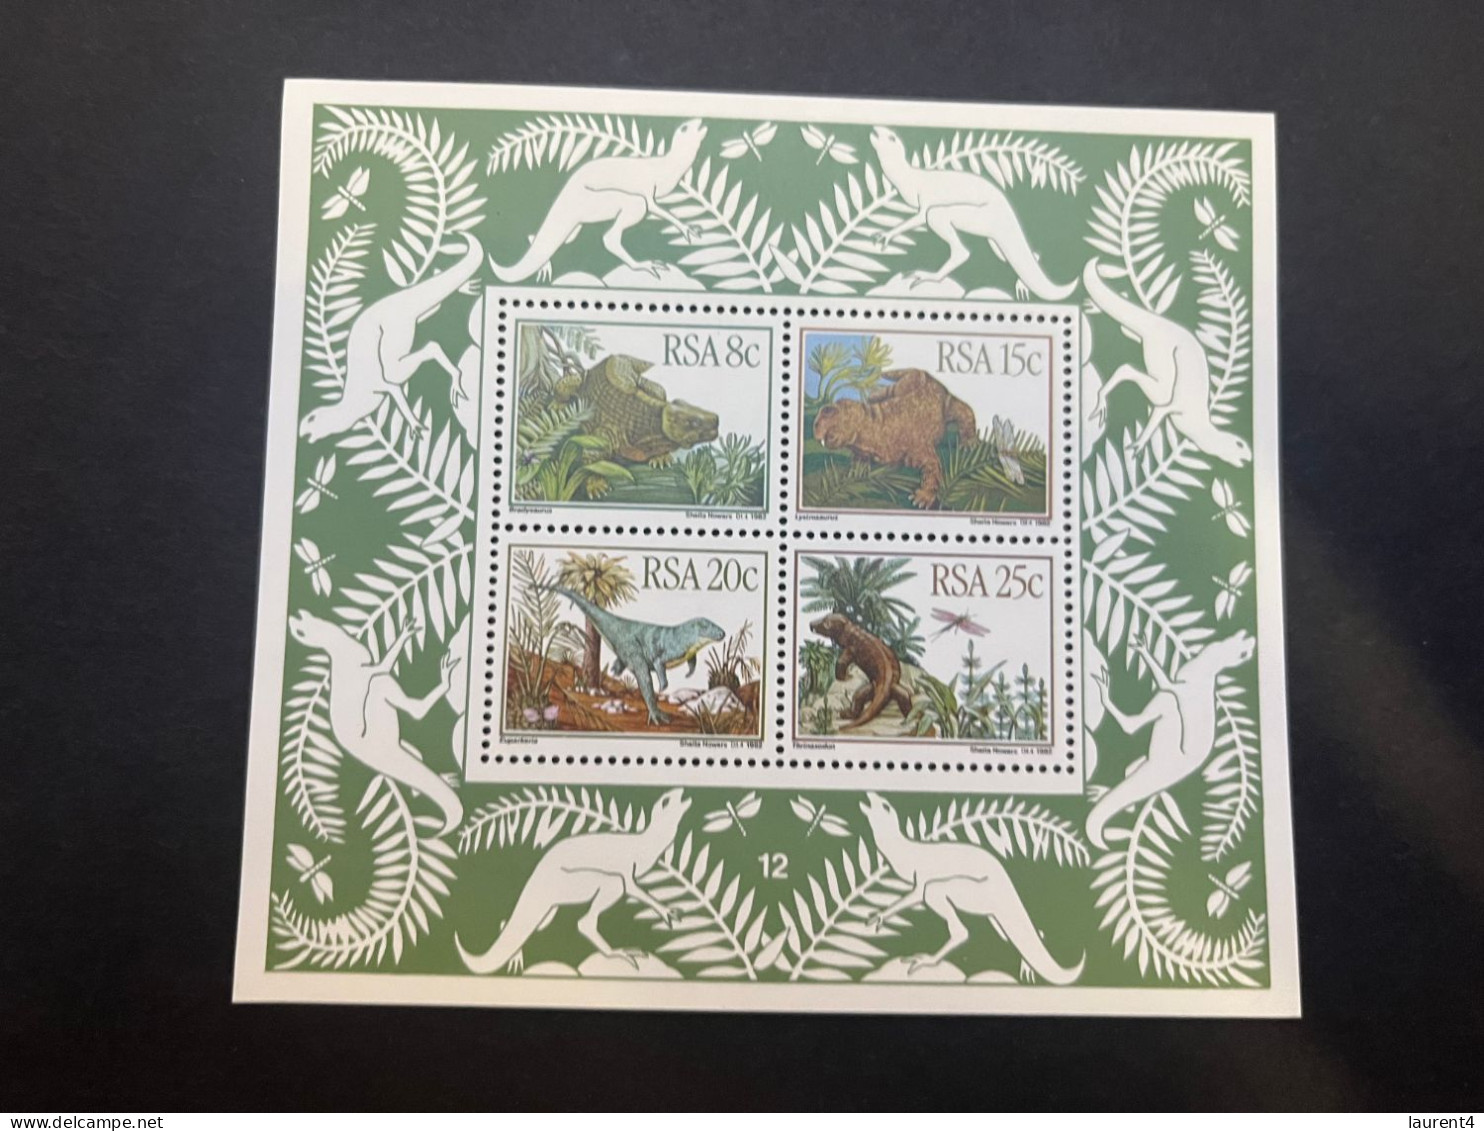 13-5-2024 (stamp) Mint (neuve) Mini-sheet - RSA South Africa - Dinosaurs - Prehistorisch